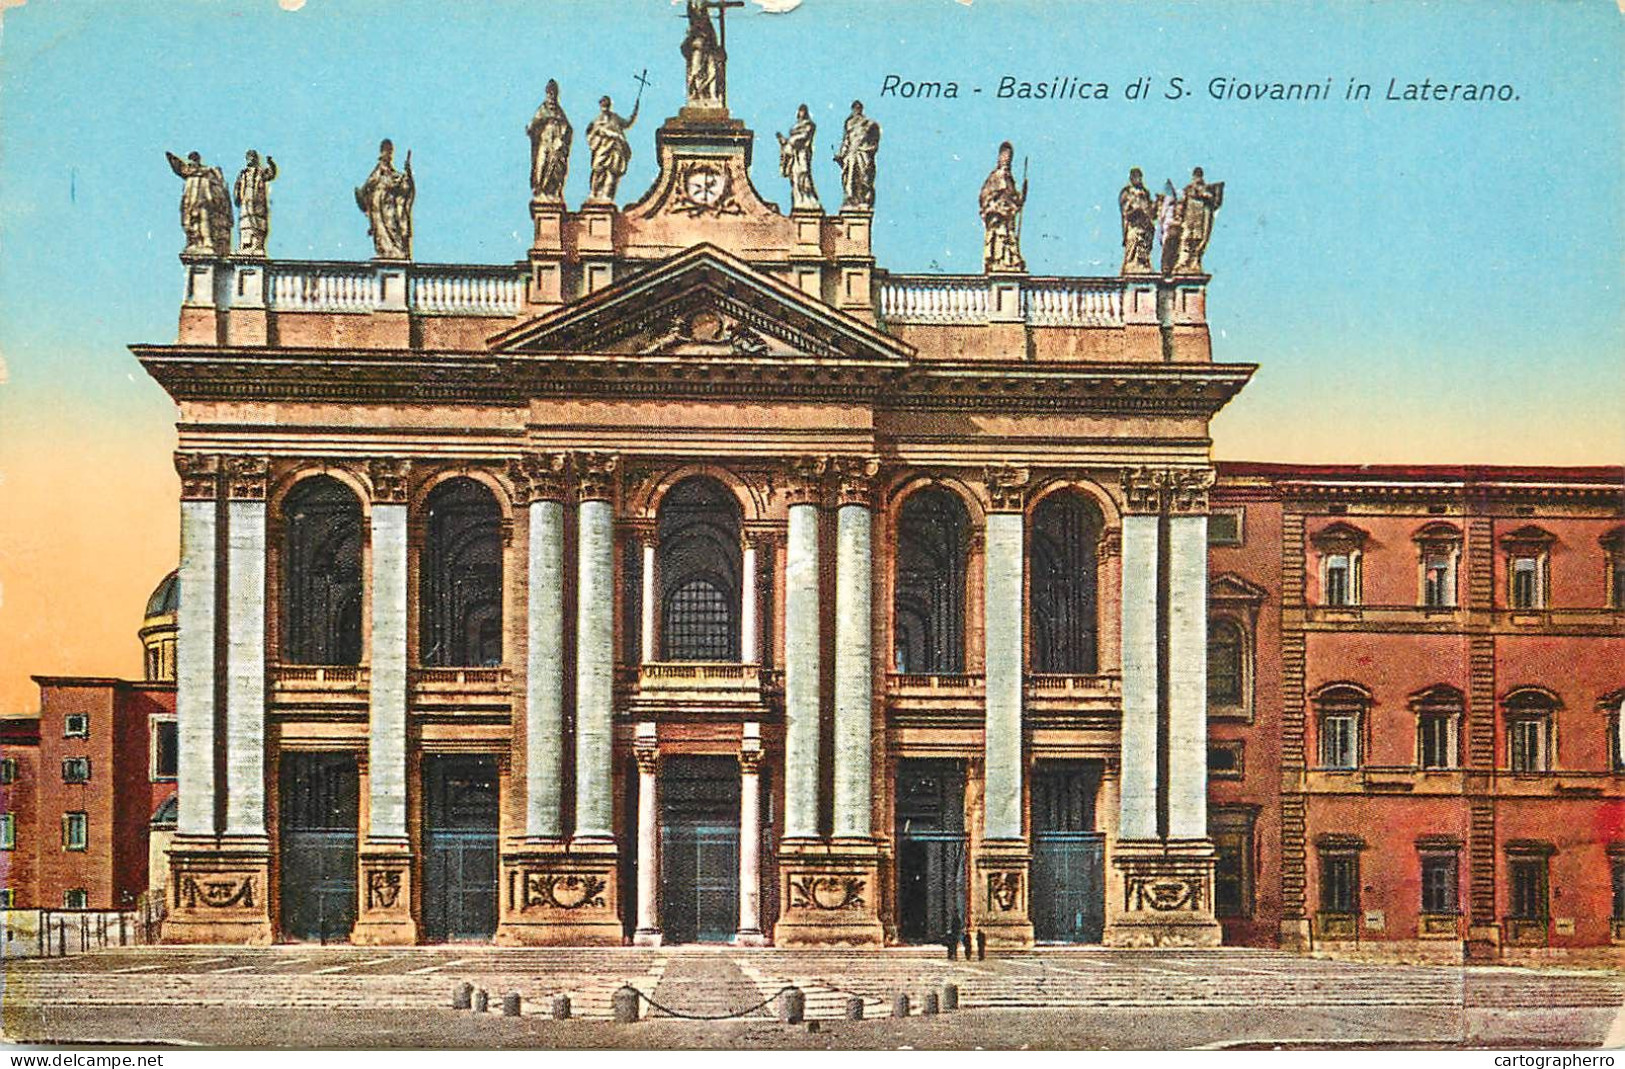 Postcard Italy Rome Basilica Di S. Giovanni In Laterano - Andere Monumente & Gebäude